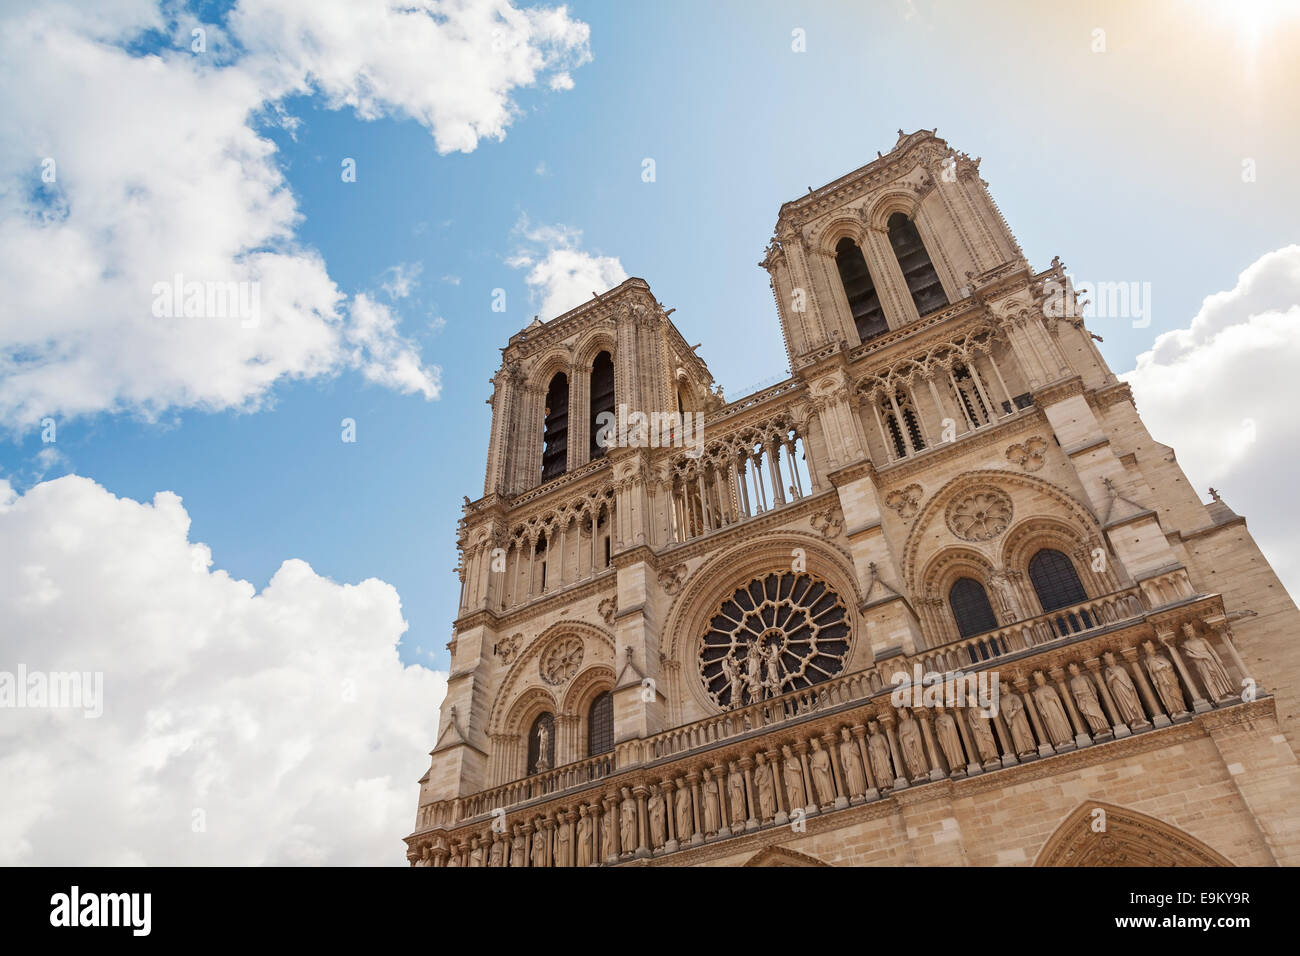 Ciel bleu et façade de la cathédrale Notre Dame de Paris, France Banque D'Images